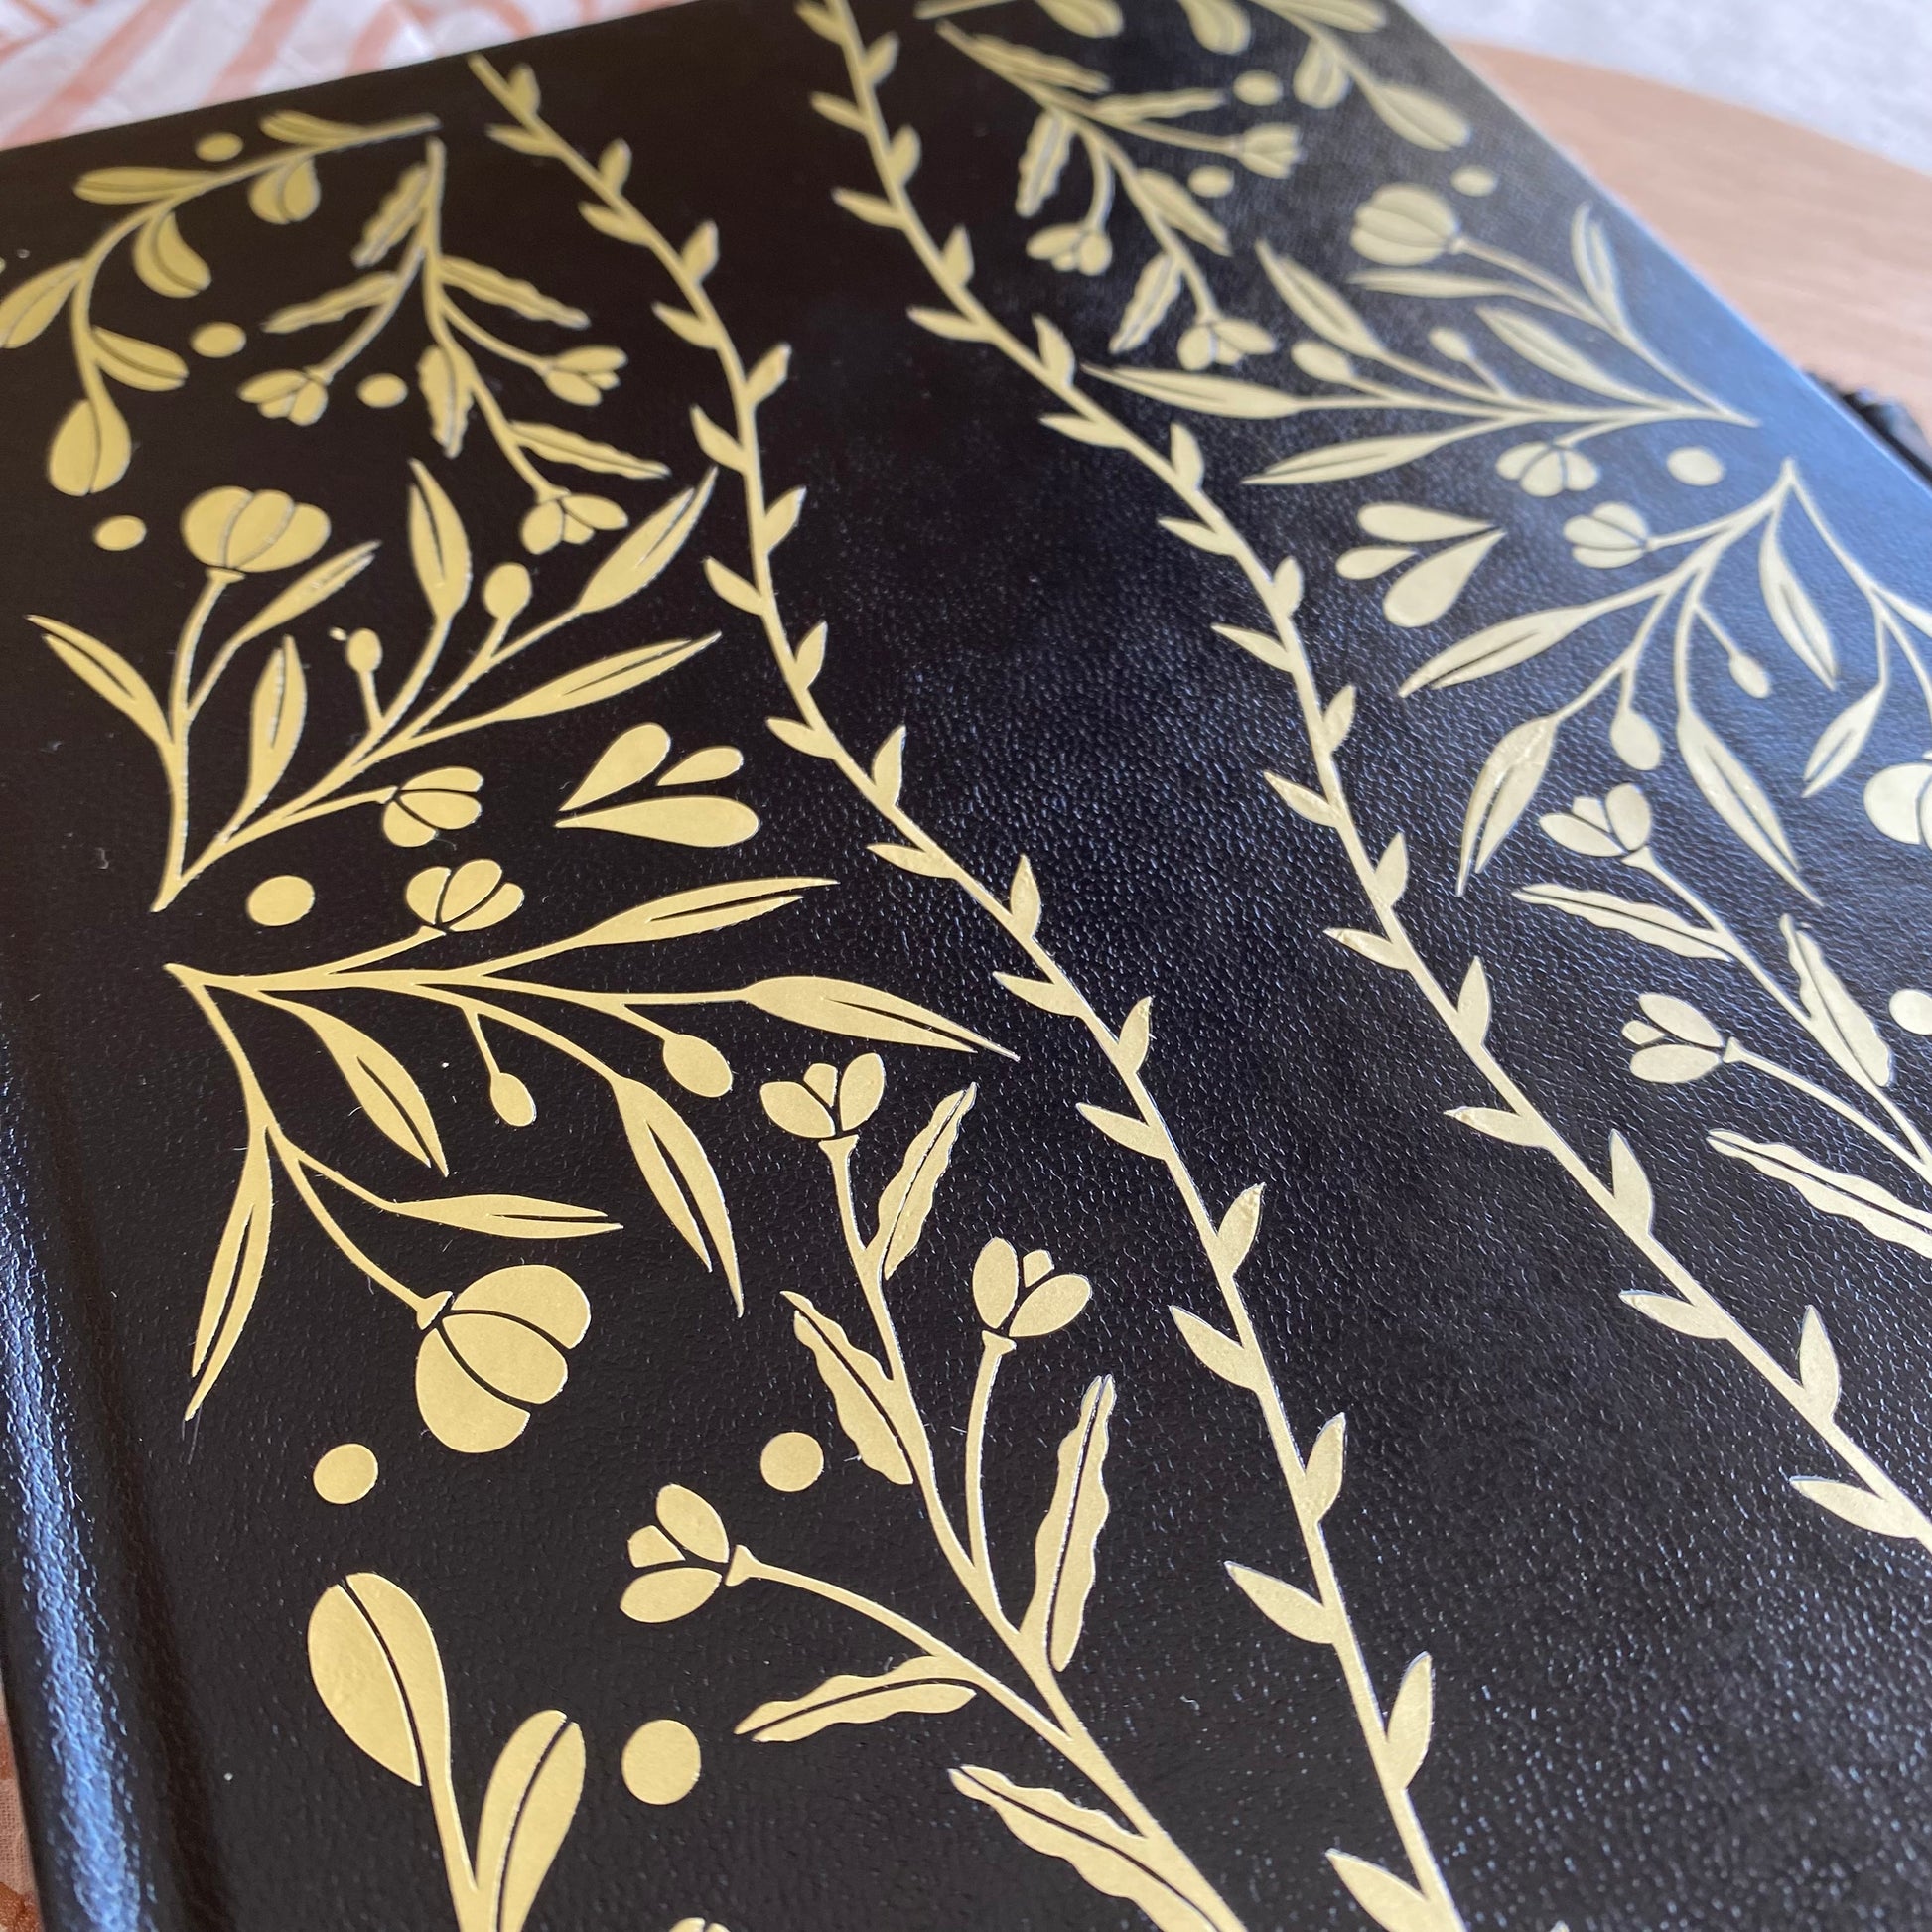 növényes mintájú fekete borító bullet journal füzet arany mintával